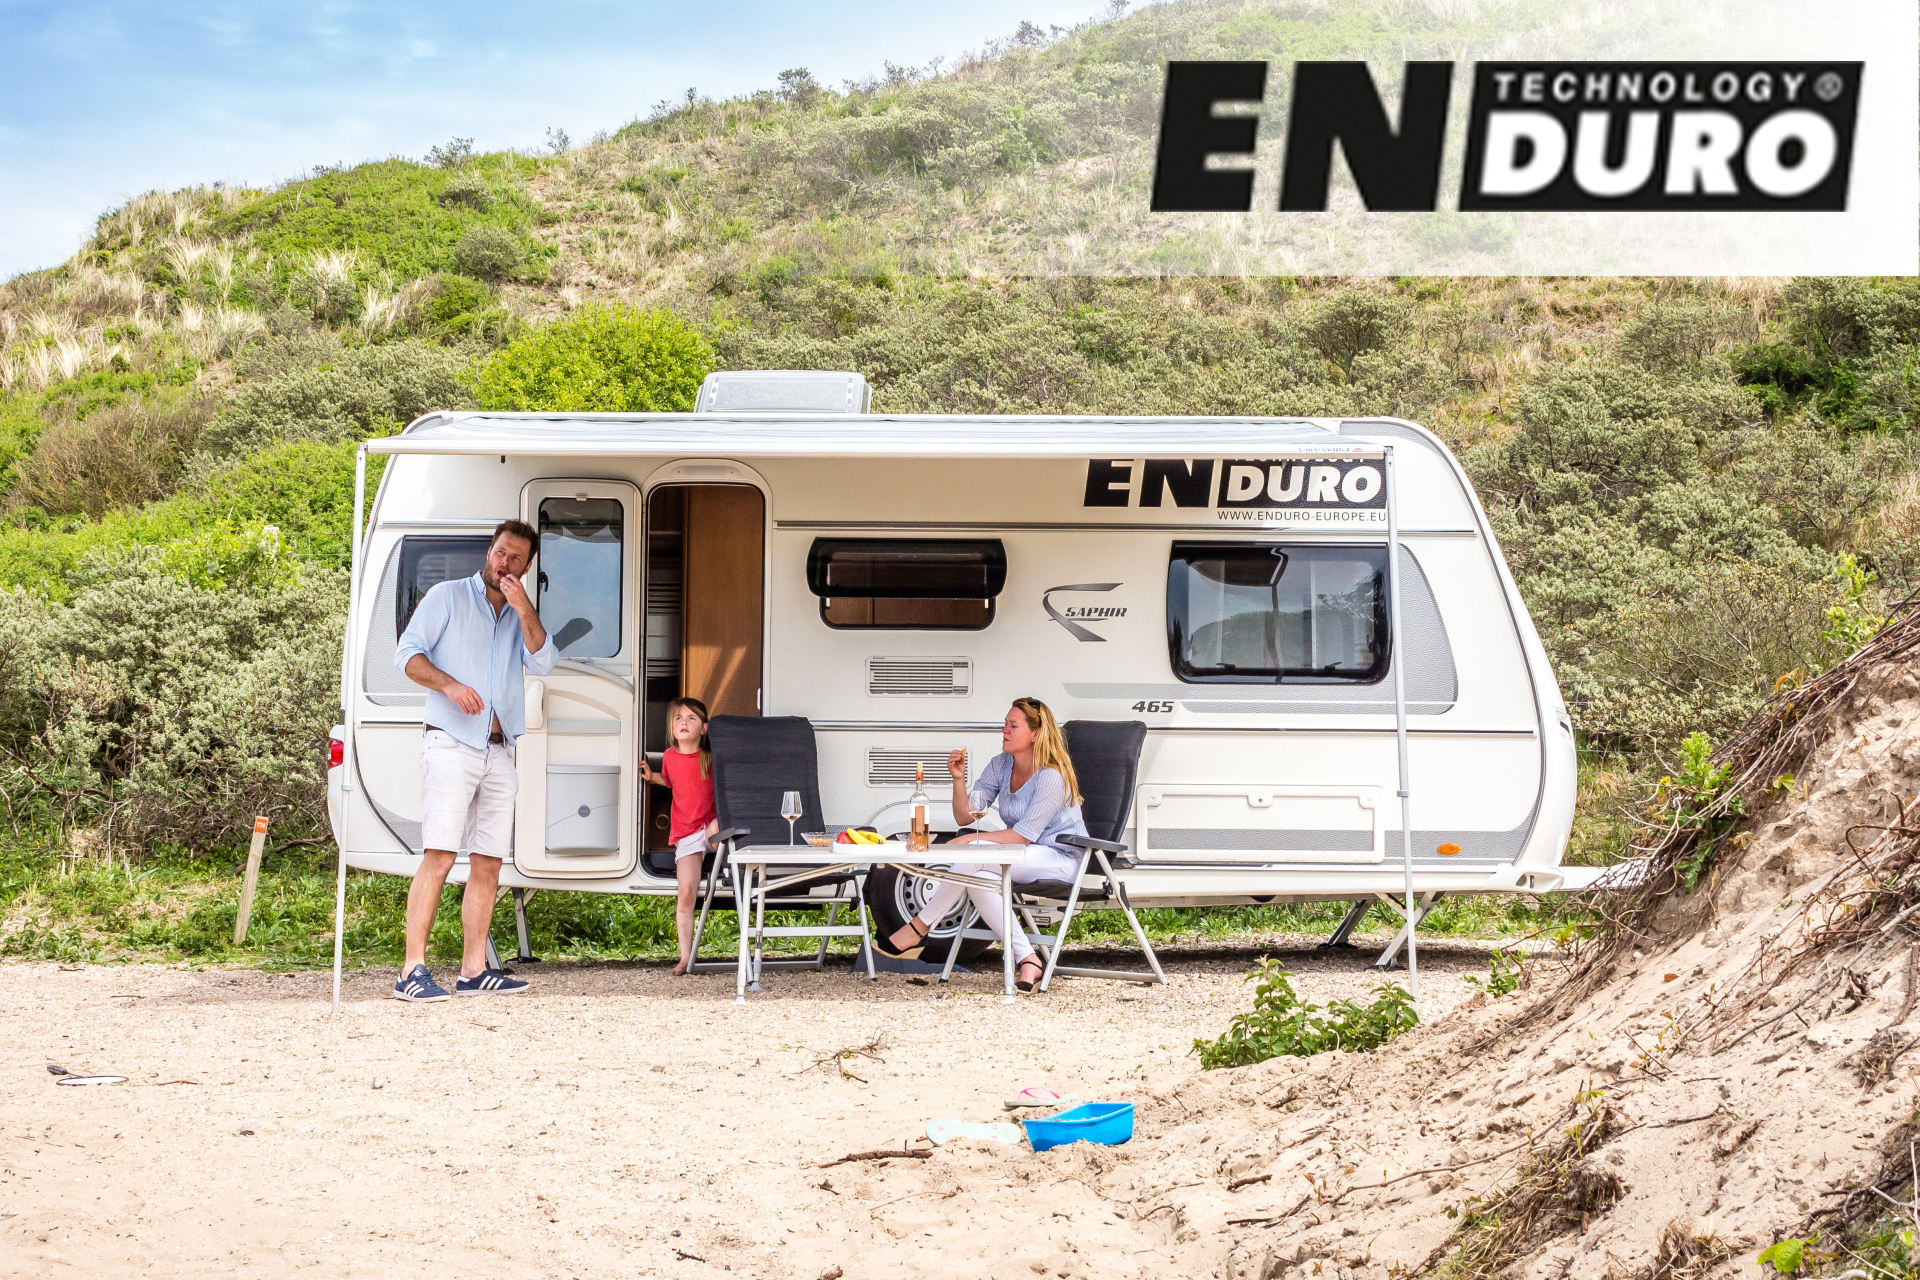 Caravan met gezin welke leid naar de website van Enduro Technology